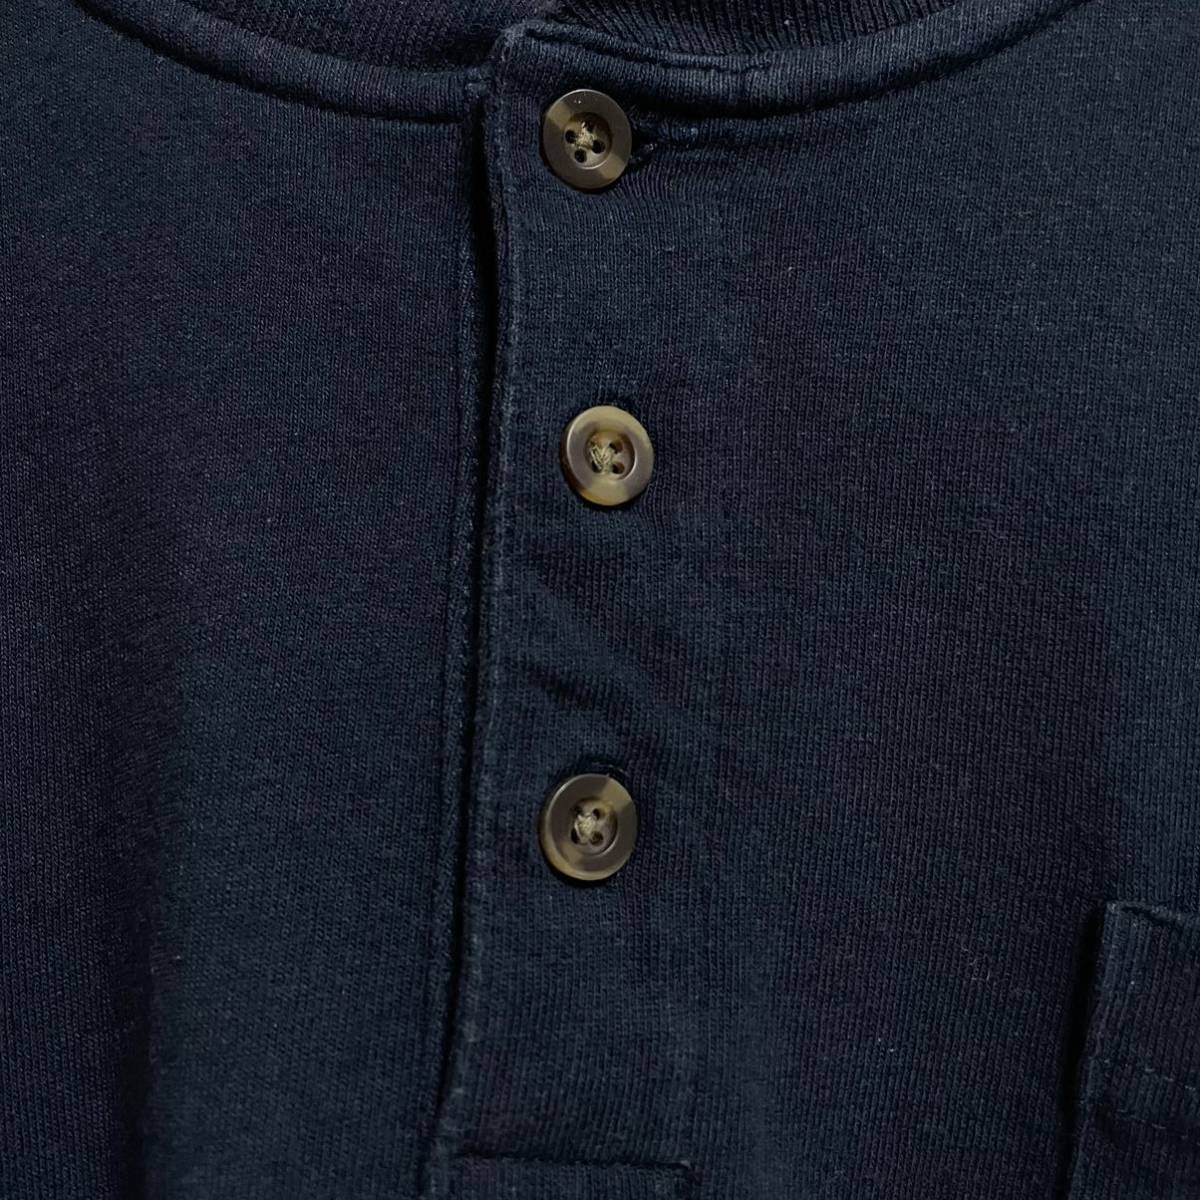 【大人気】Carhartt カーハート 刺繍 企業ロゴ 胸ポケット ヘンリーネック ビッグサイズ ロングスリーブ 長袖Tシャツ ロンT 2XL相当 古着